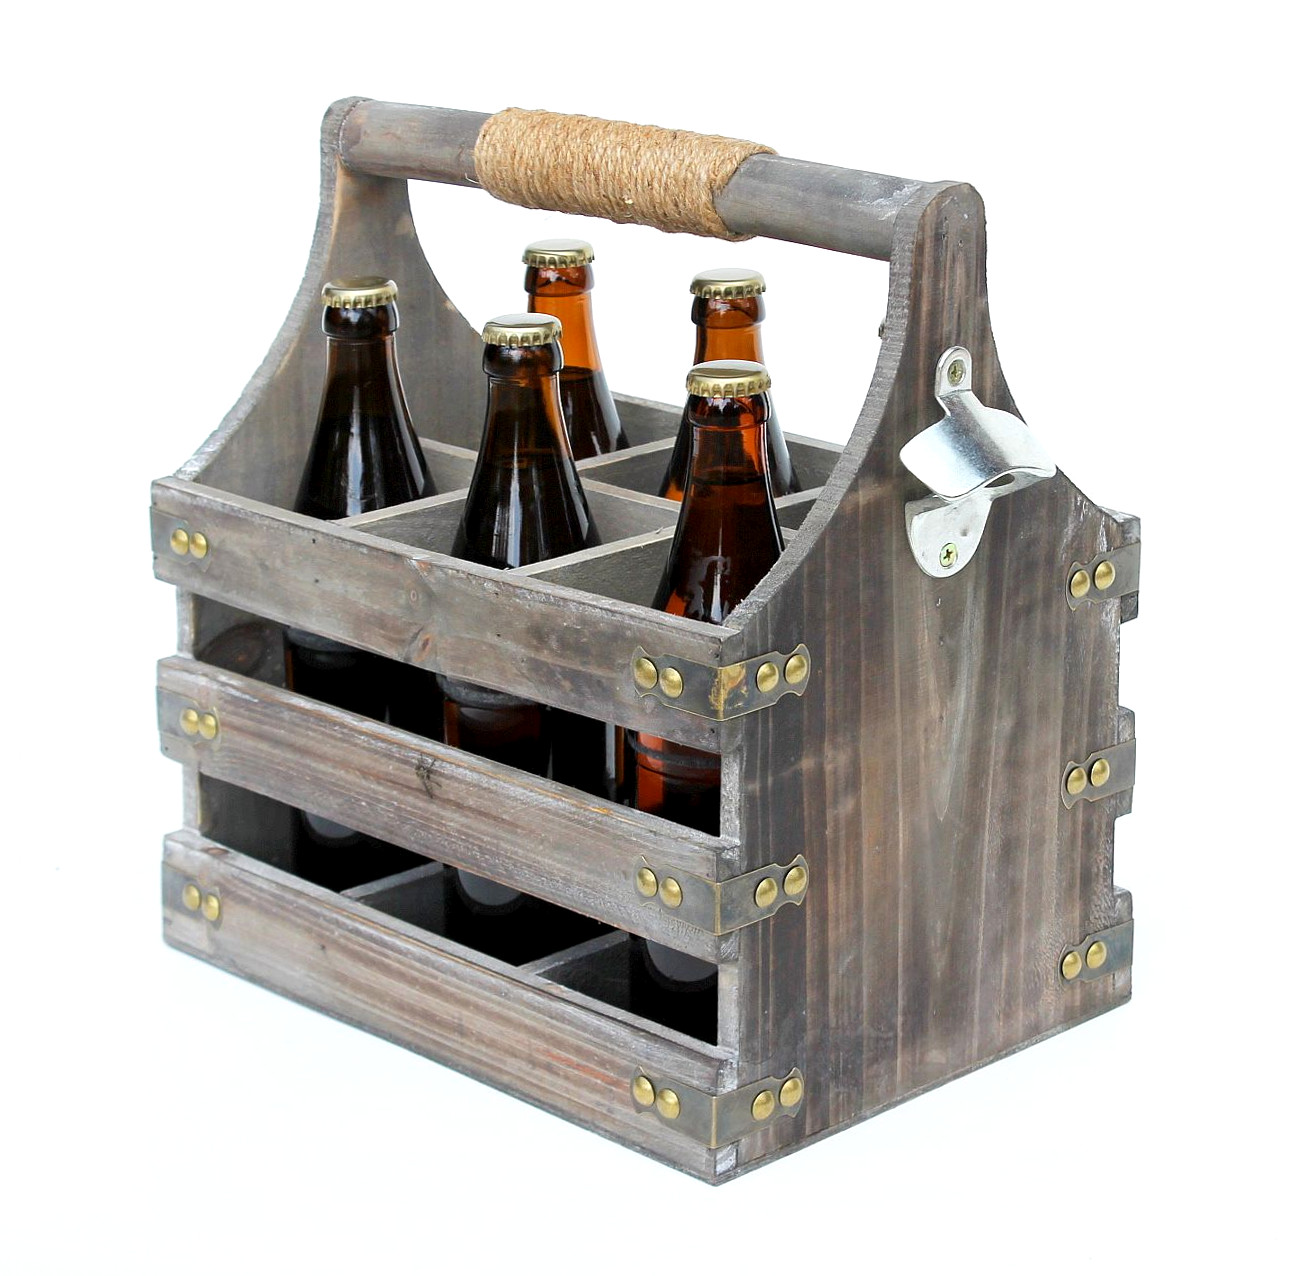 DanDiBo Bierträger aus Holz mit Flaschenträger Männergeschenke-DanDiBo 93860 Männerhandtasche Flaschenöffner Öffner Flaschenkorb